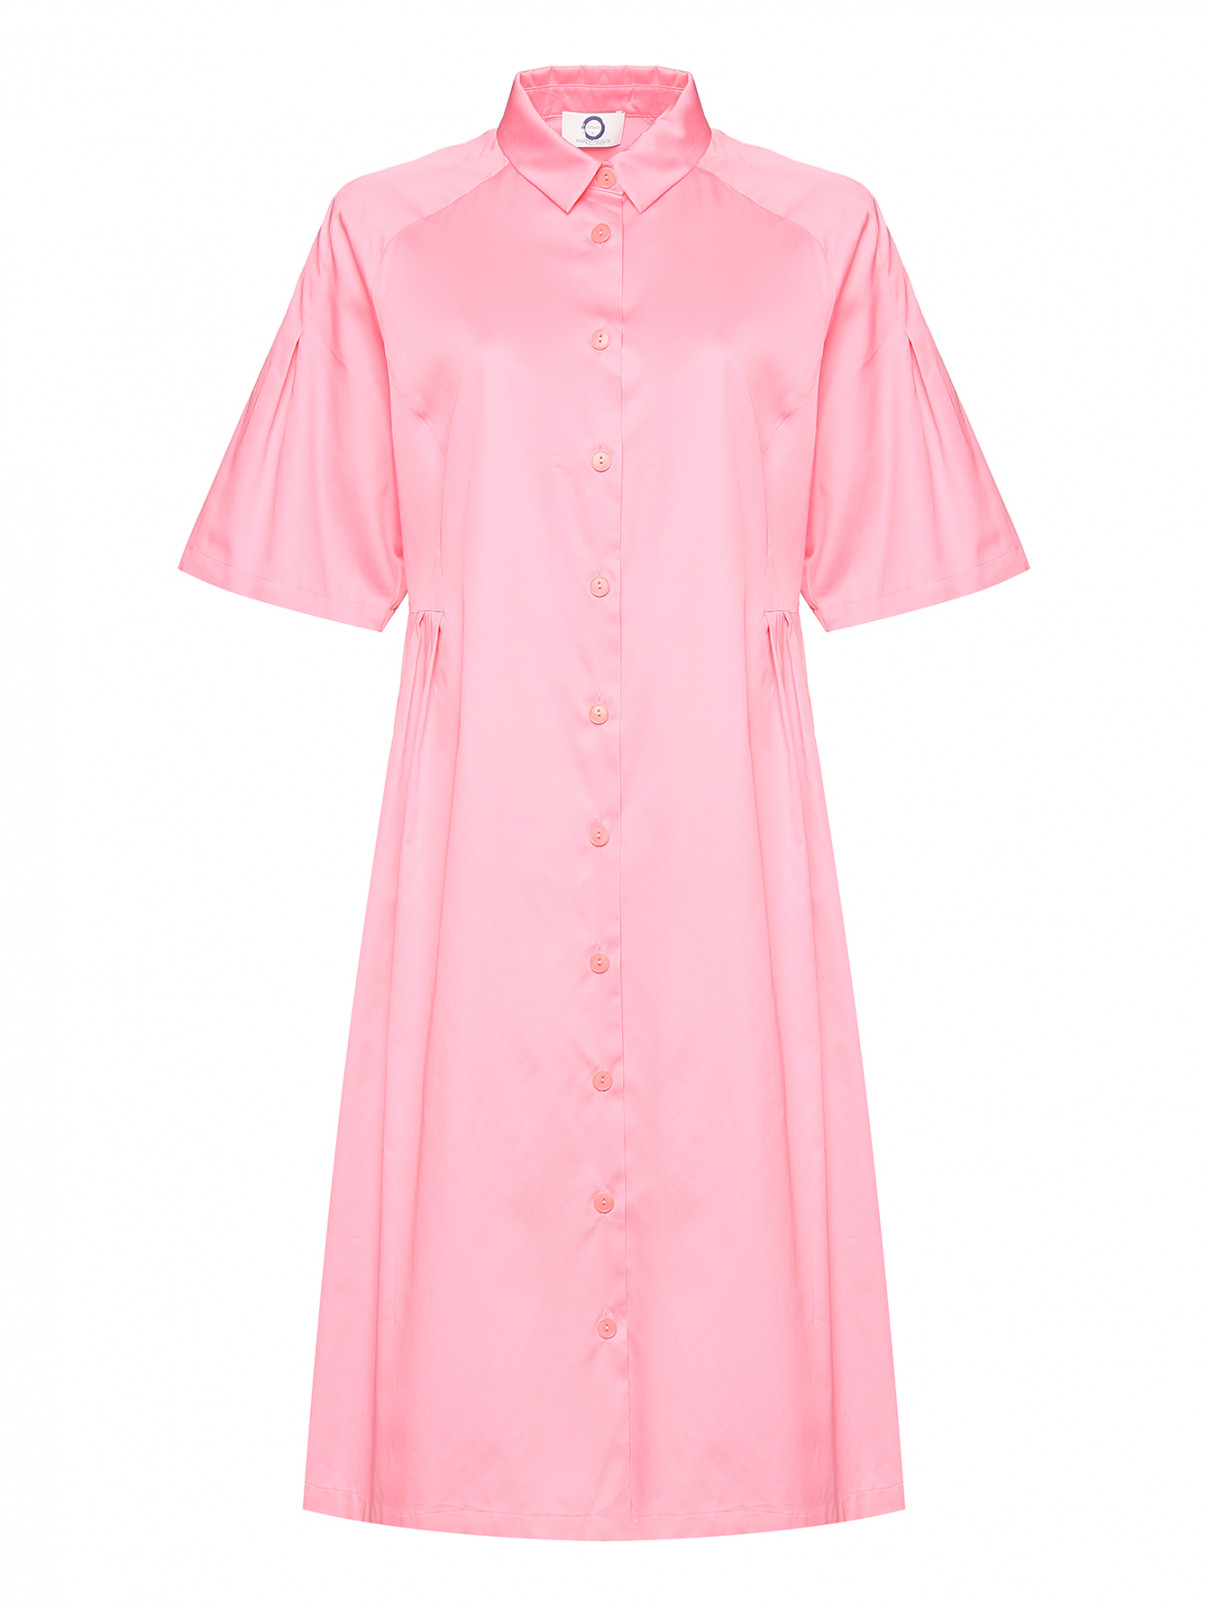 Платье из хлопка с короткими рукавами Marina Rinaldi  –  Общий вид  – Цвет:  Розовый